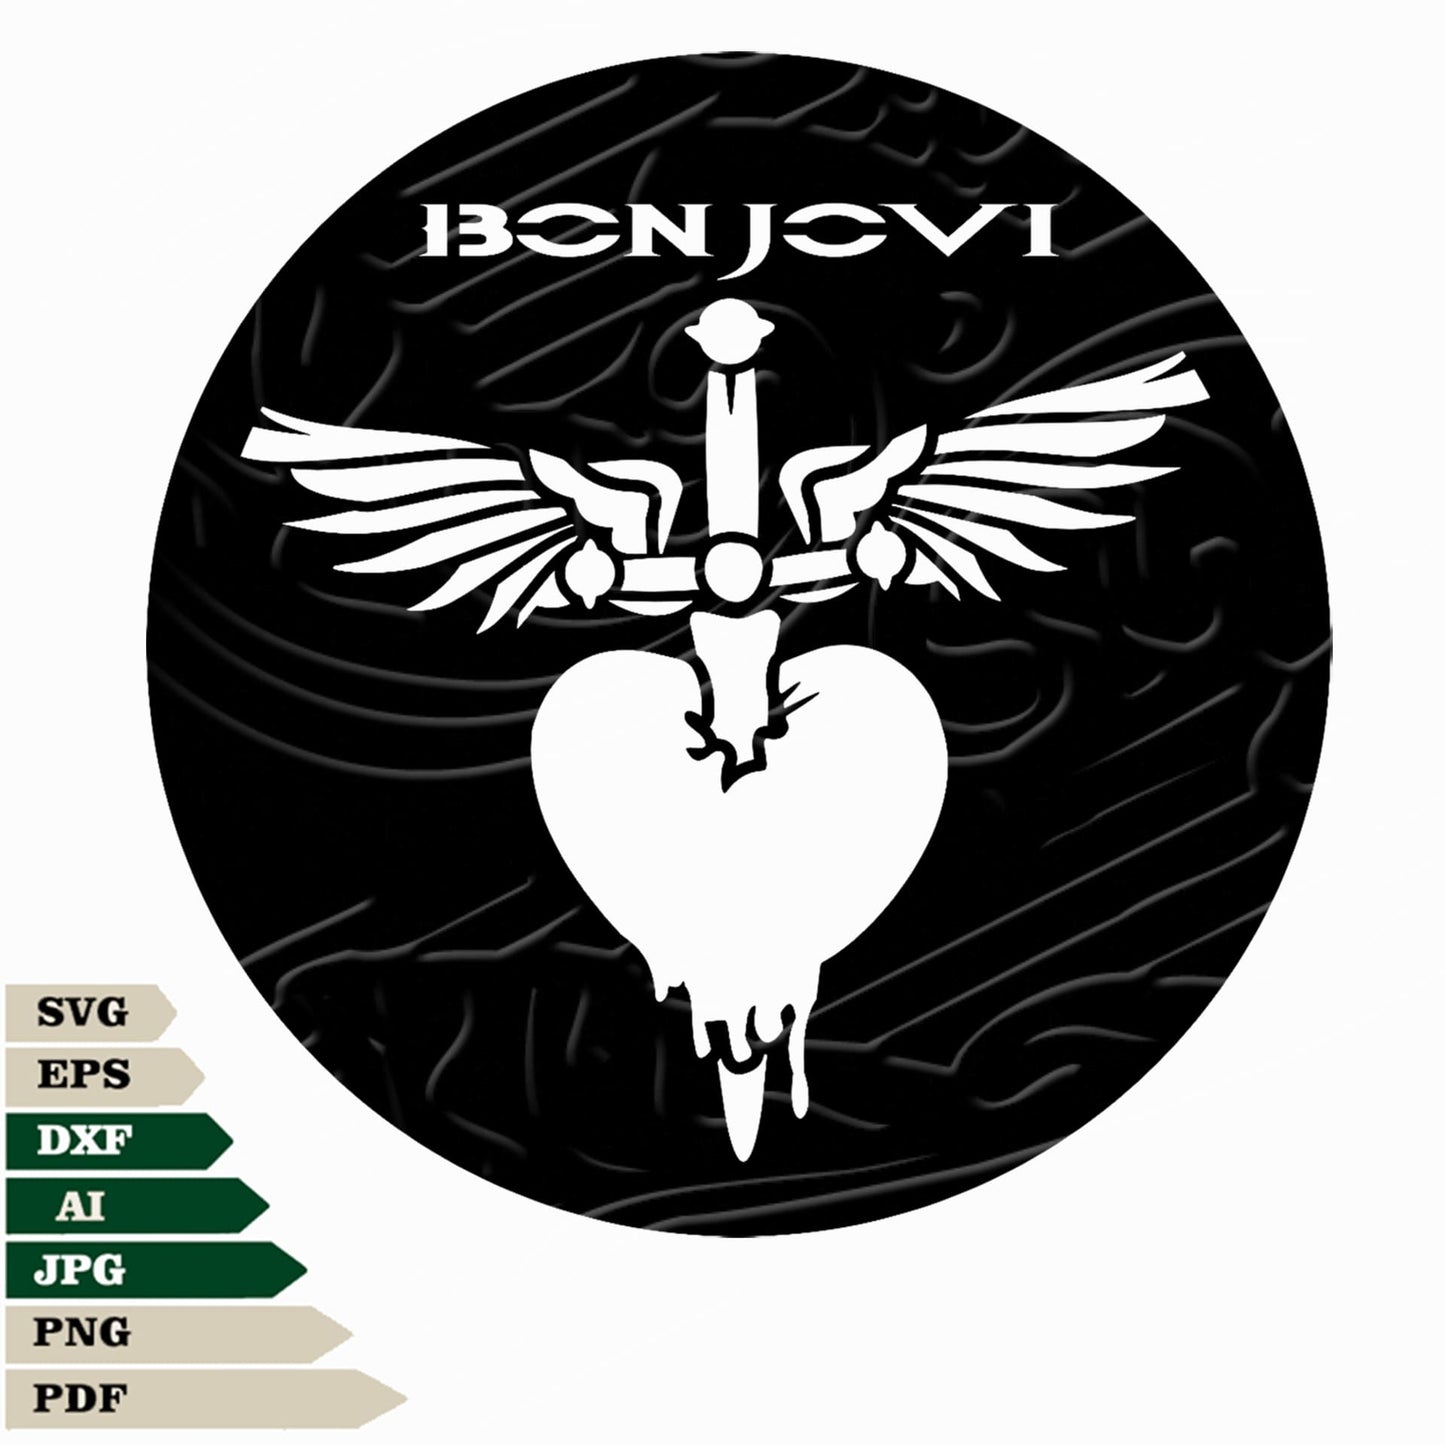 Jon Bon Jovi Svg File, Bon Jovi Logo Svg Design, Bon Jovi Logo Png, Rock Music Band Svg File, Bon Jovi Vector Graphics, Bon Jovi Logo Svg For Tattoo, Bon Jovi Logo Svg For Cricut